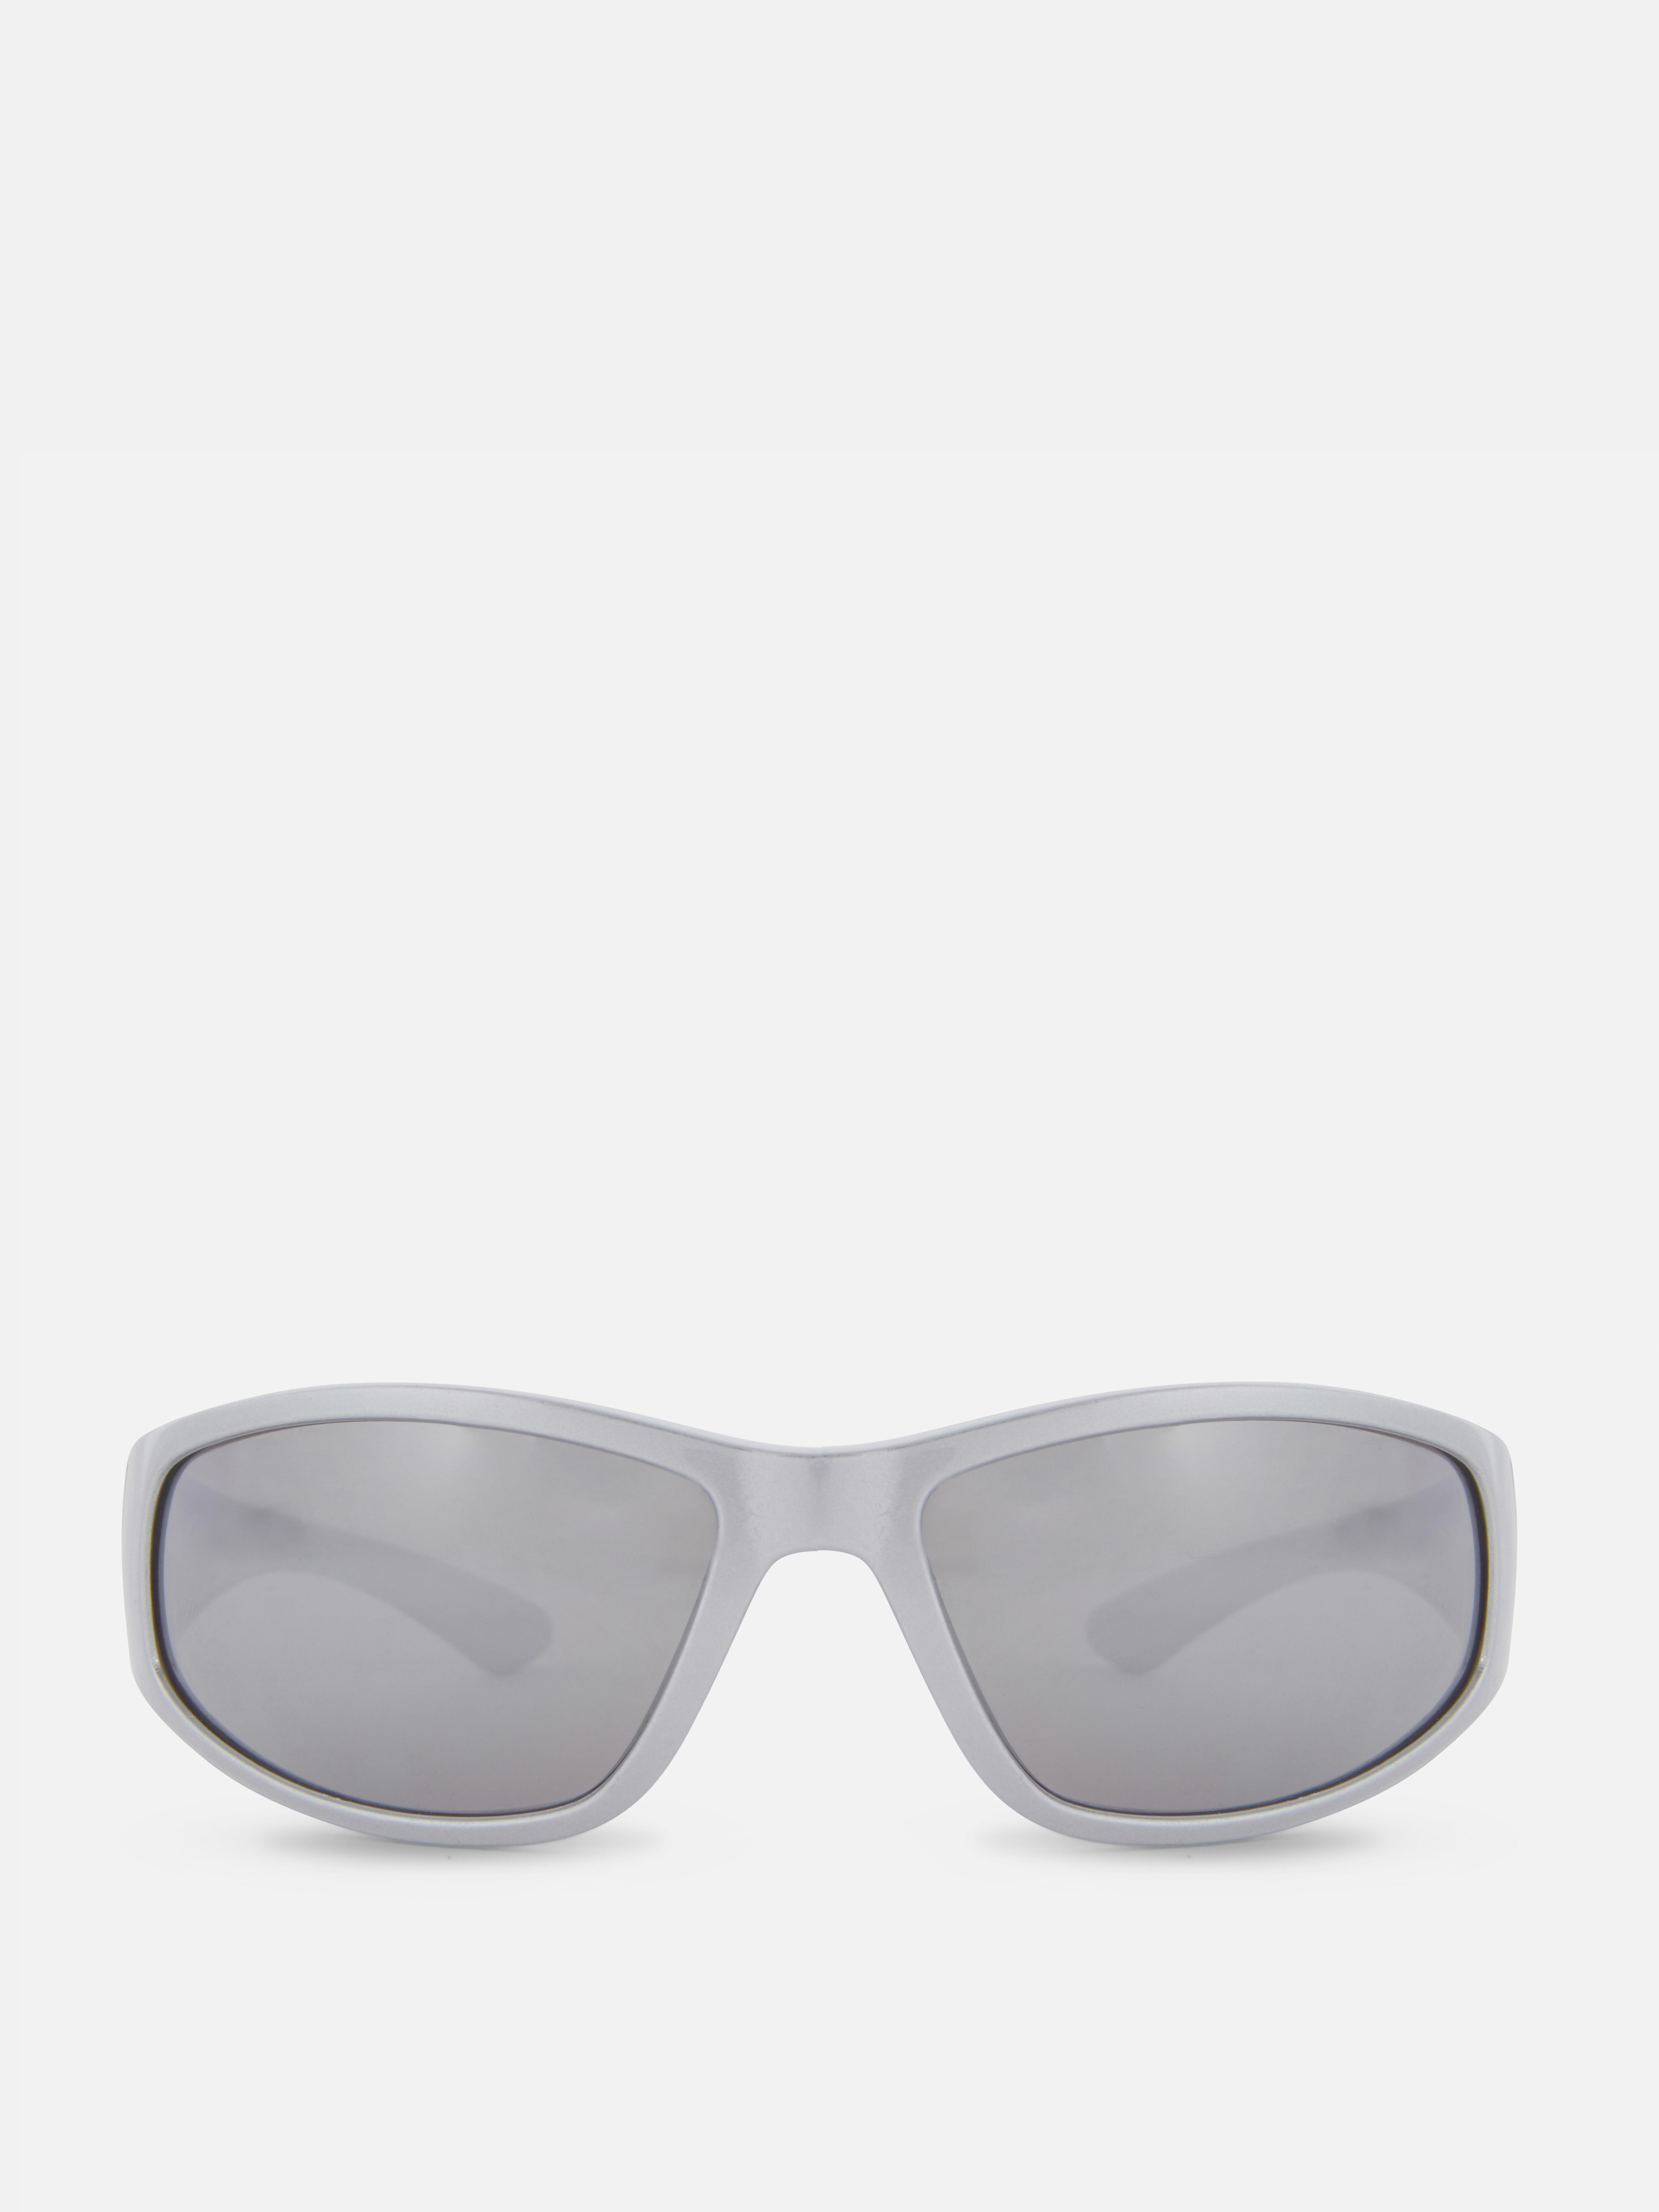 Visor-Sonnenbrille mit rechteckigen Gläsern